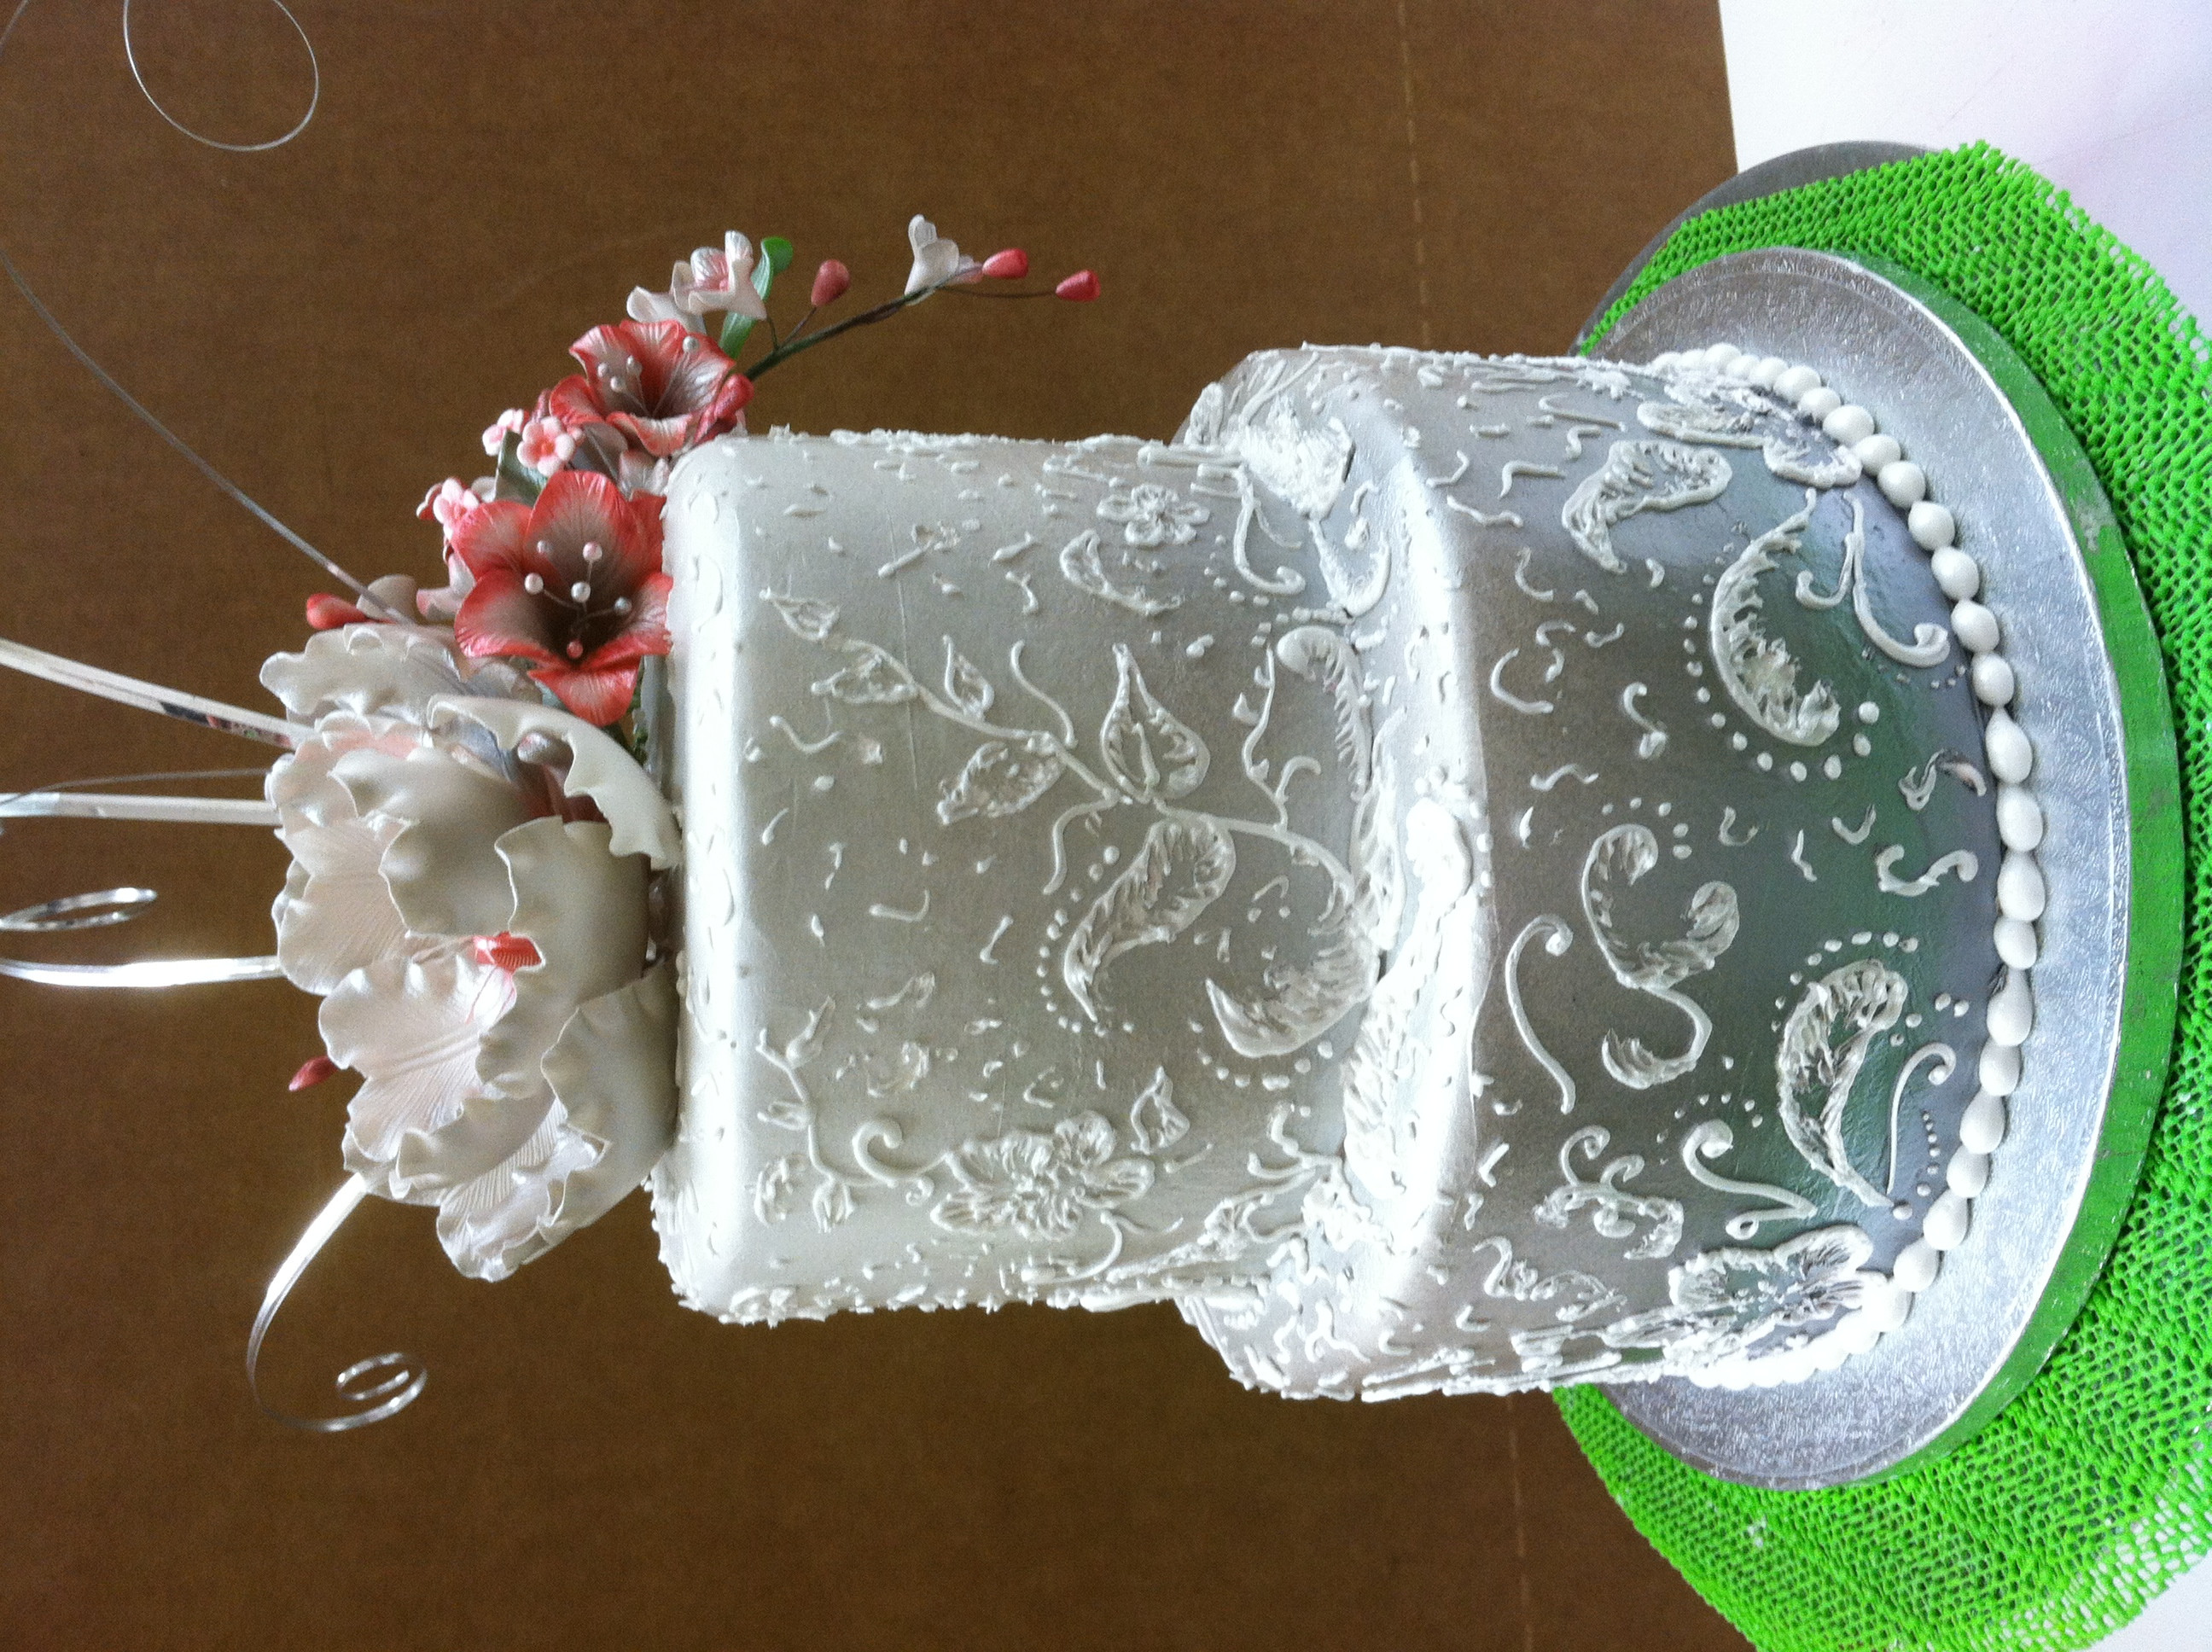 Hyvee Wedding Cakes Prices Best 20 Hyvee Wedding Cake Prices